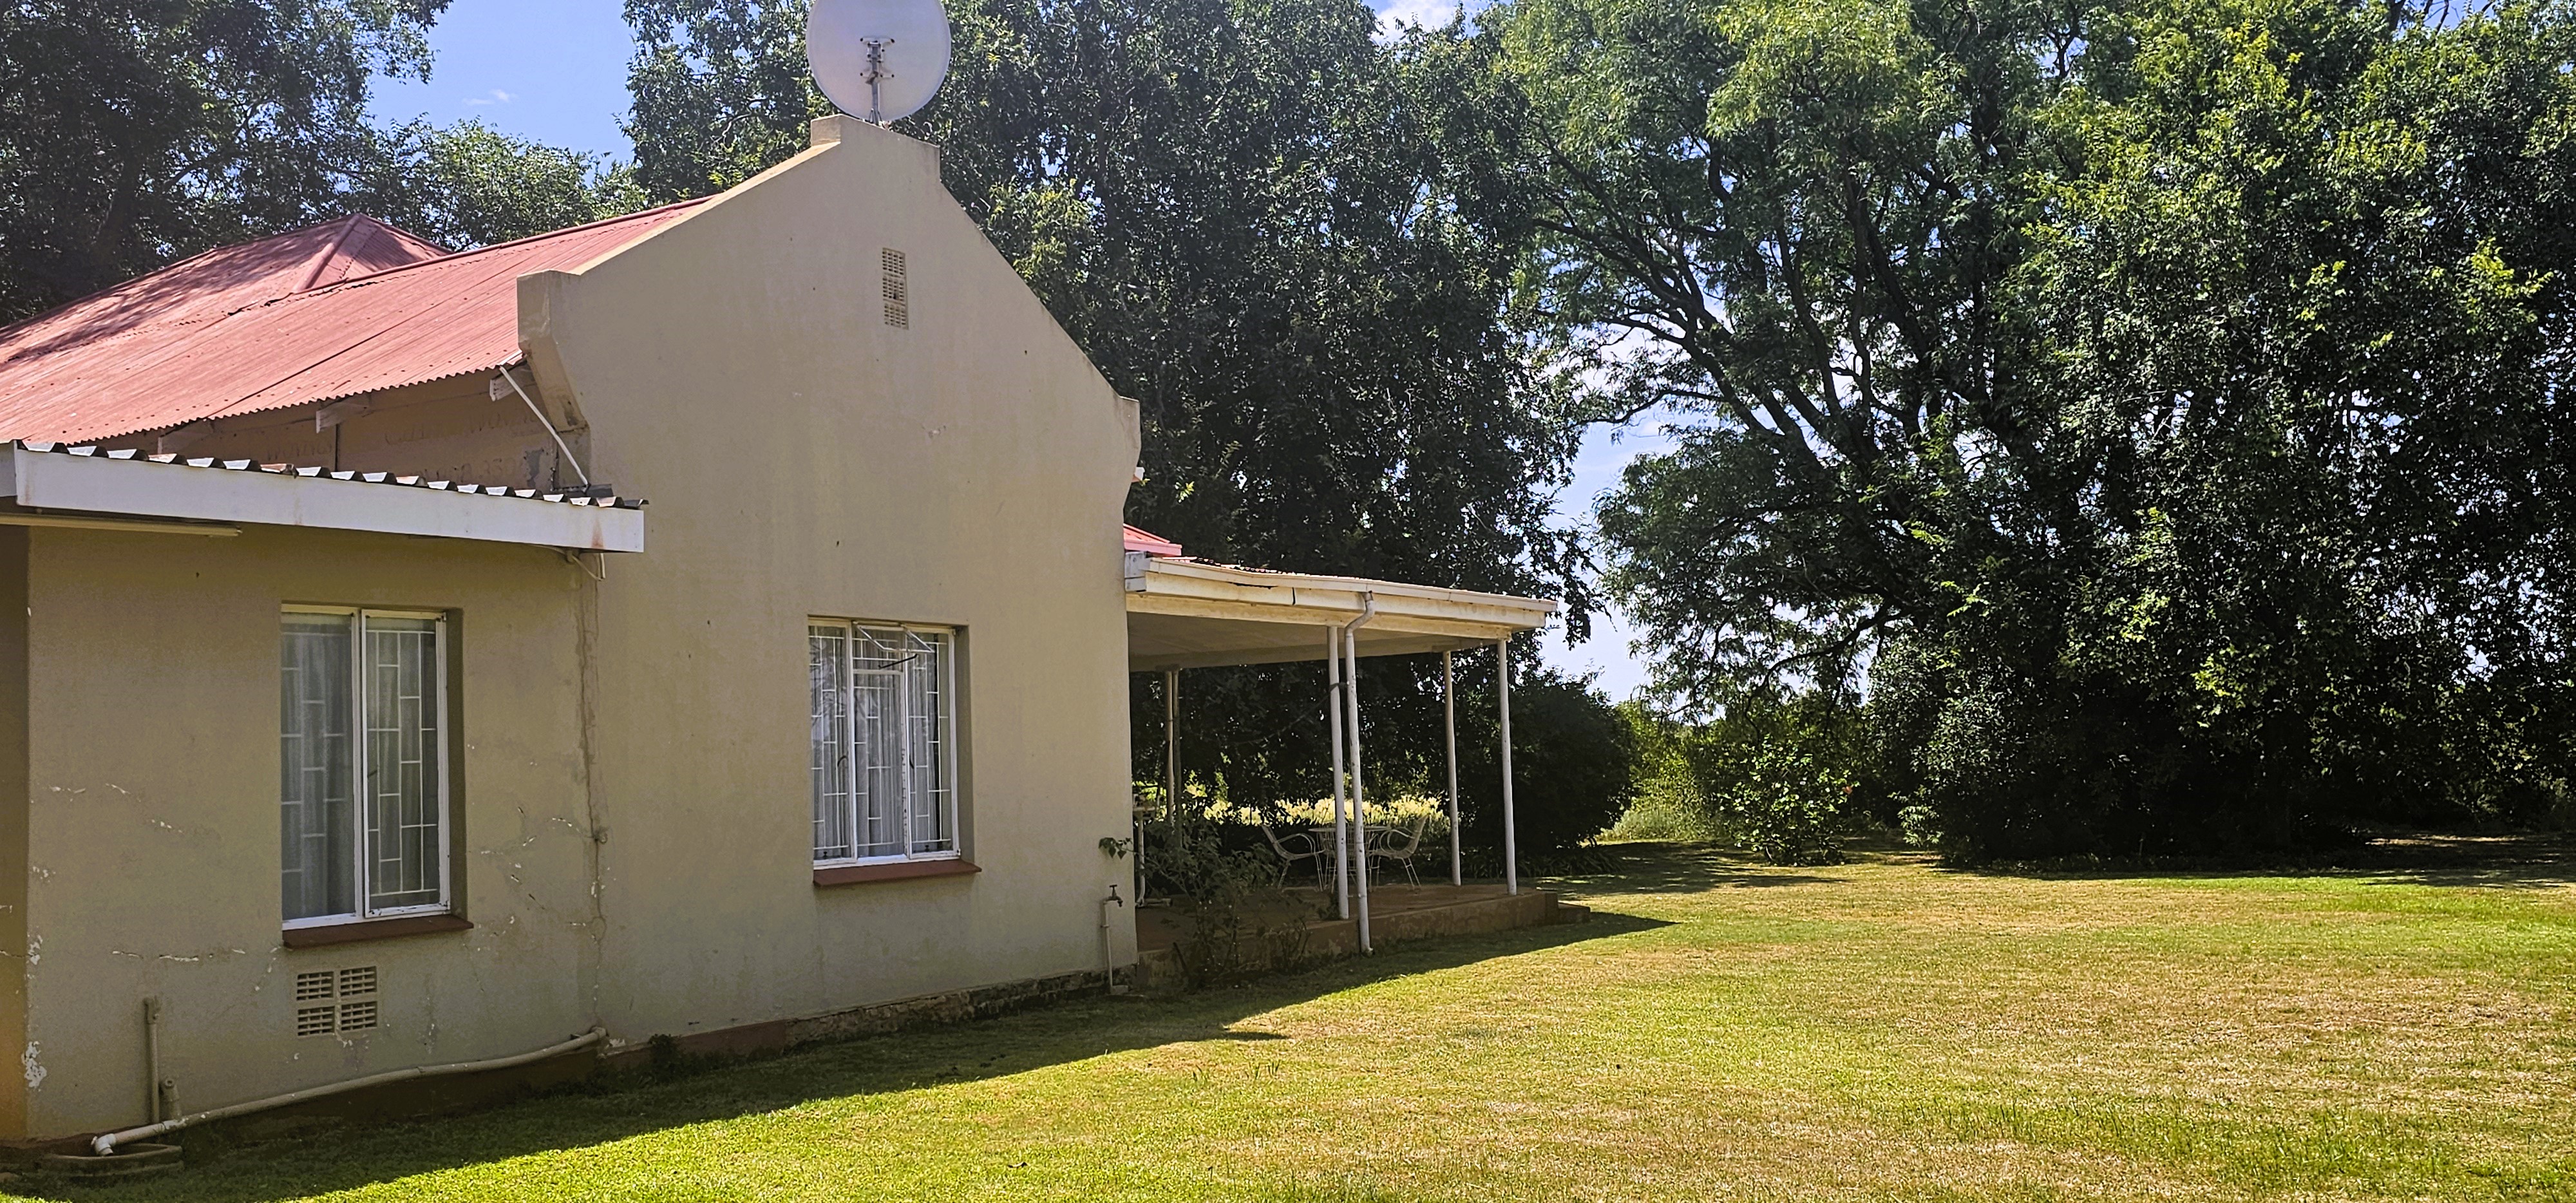 16 Bedroom Property for Sale in Bela Bela Limpopo